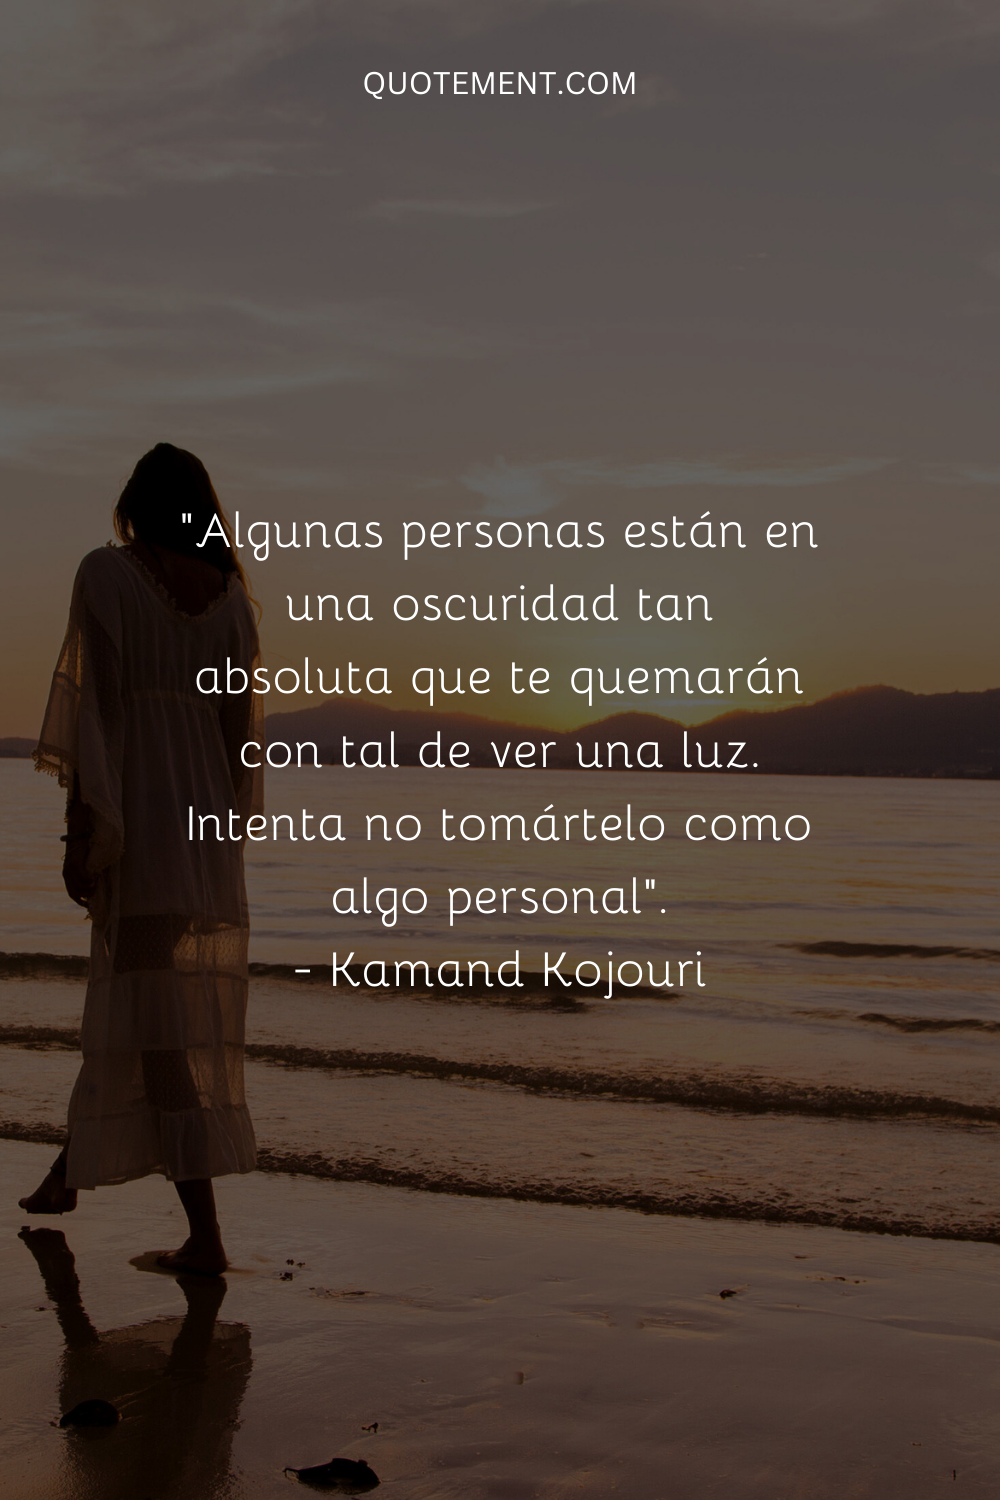 "Algunas personas están en una oscuridad tan absoluta que te quemarán con tal de ver una luz. Intenta no tomártelo como algo personal". - Kamand Kojouri